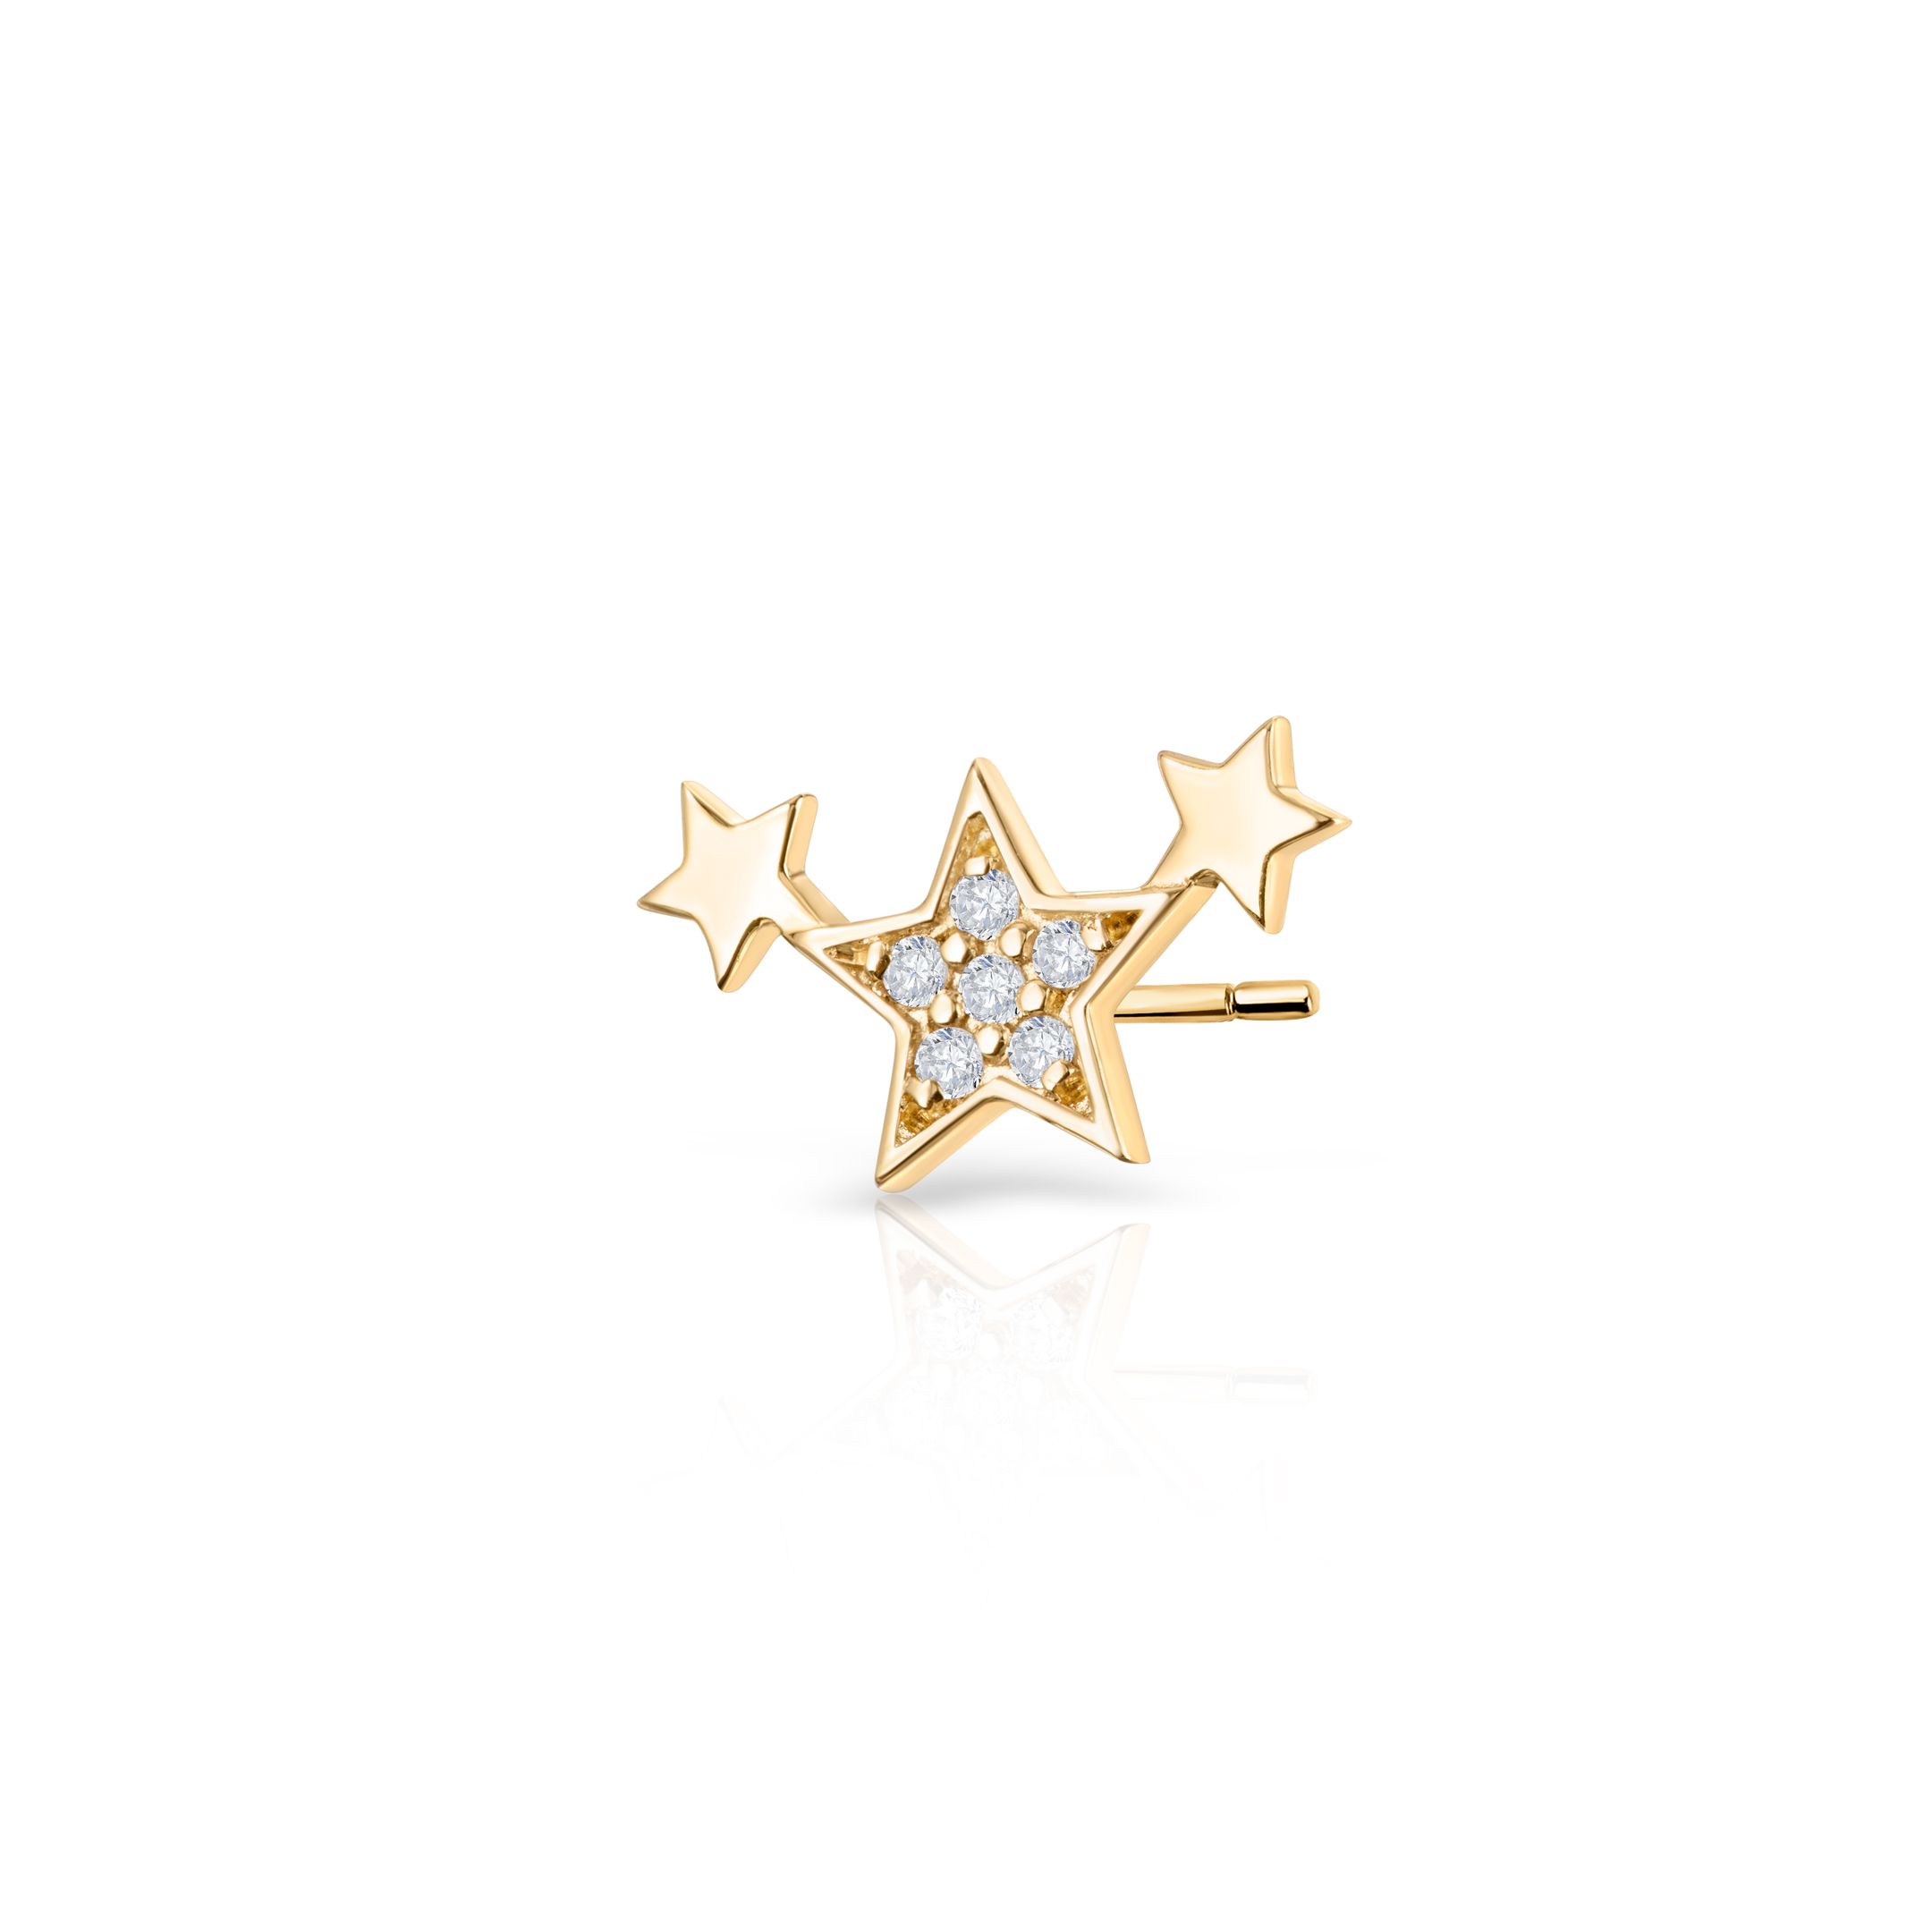 Pendiente Piercing Ear Cuff Estrellas Moon Diamonds en Oro Amarillo de 18 Kt